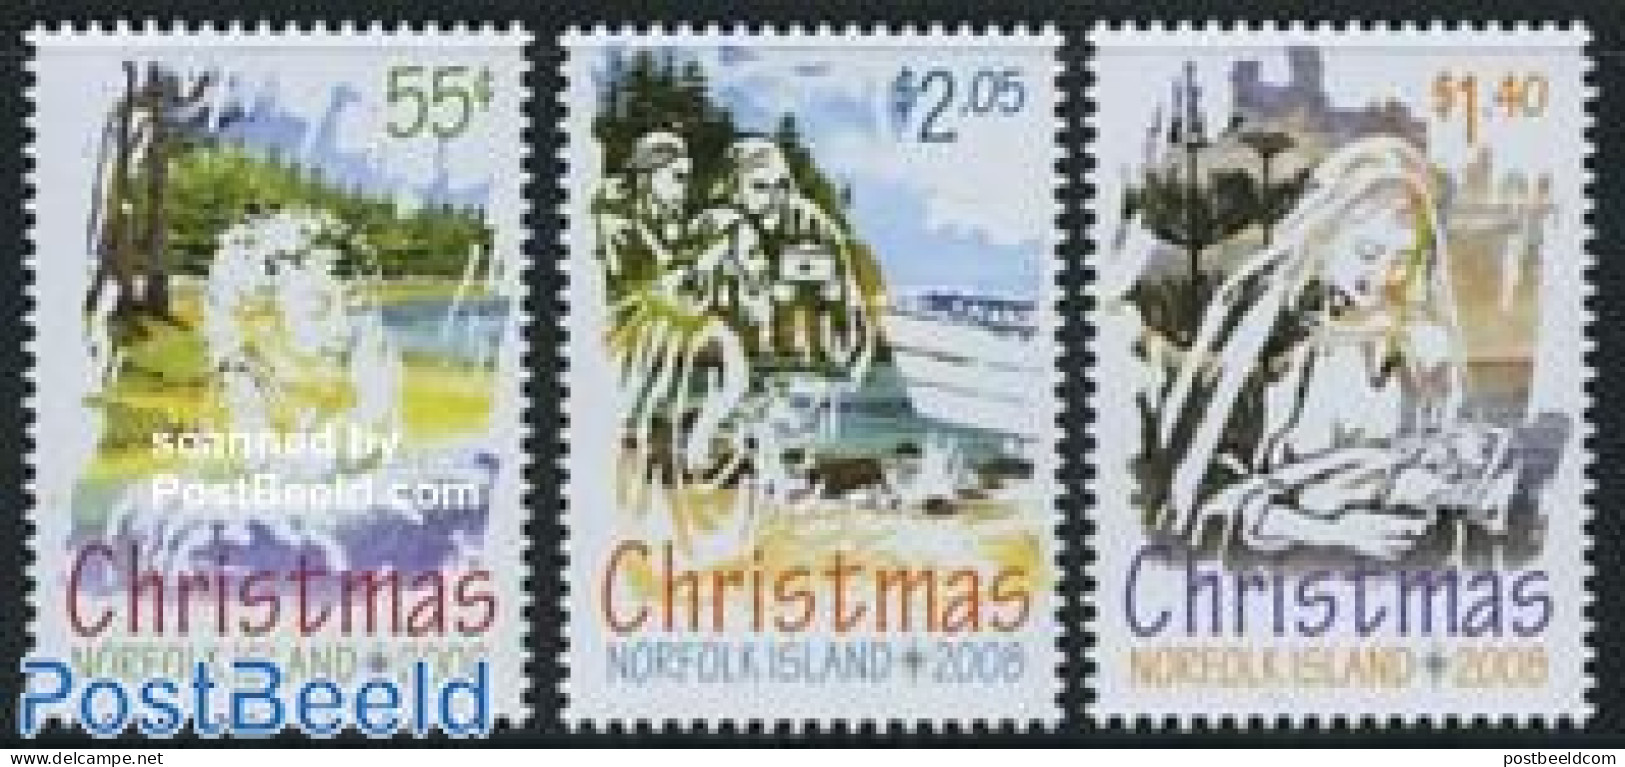 Norfolk Island 2008 Christmas 3v, Mint NH, Religion - Christmas - Christmas